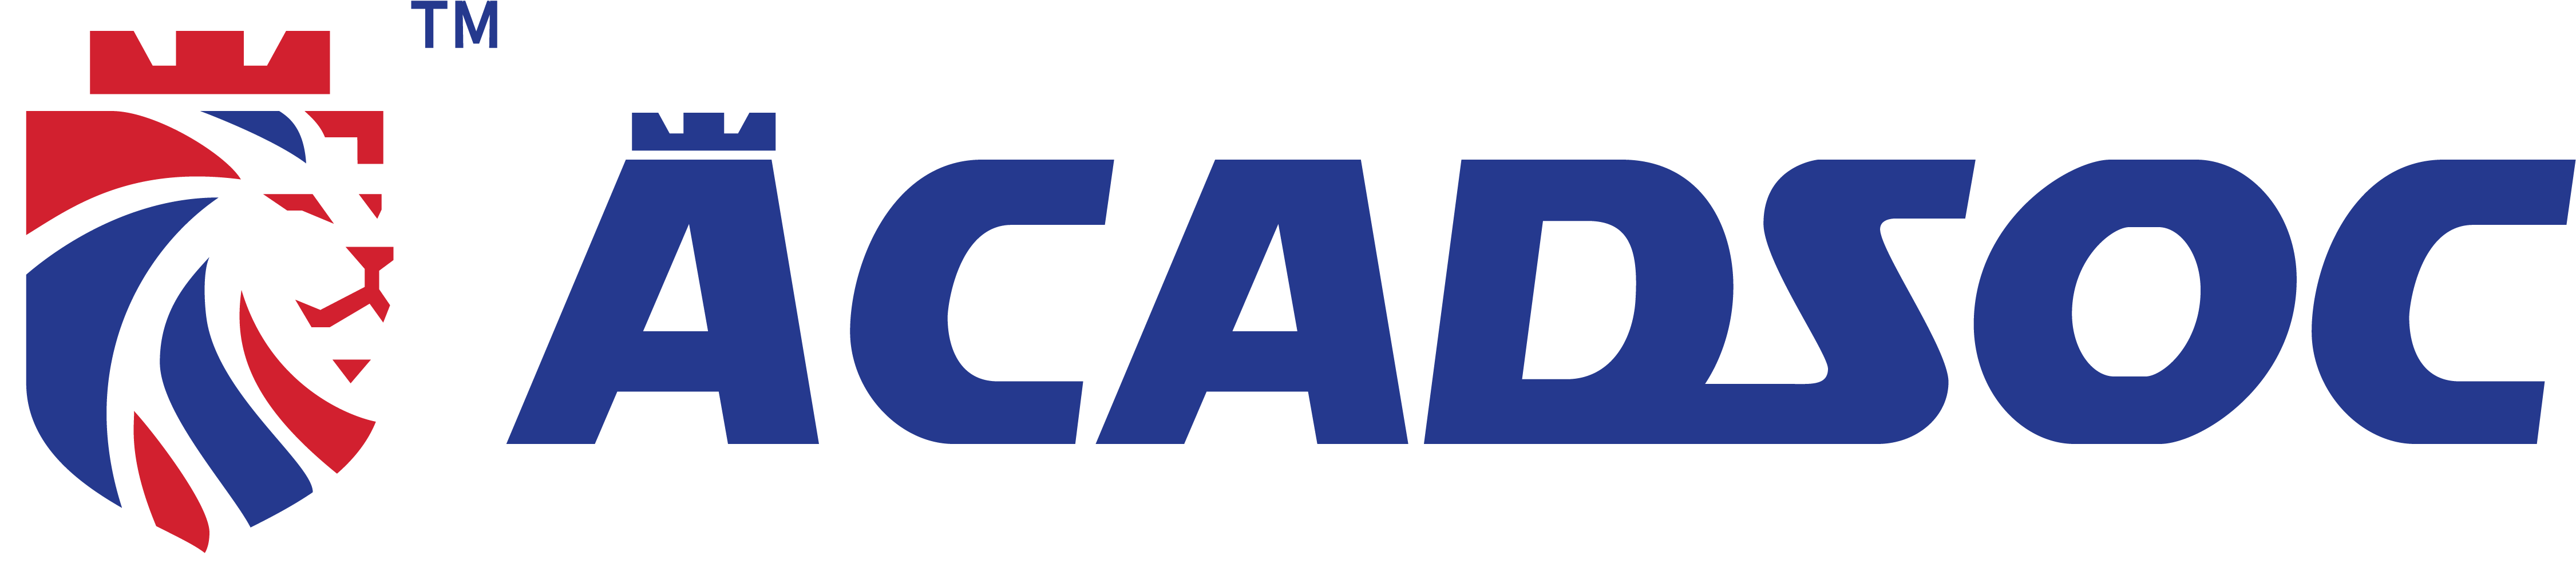 ACADSOC – Training Partner of Xcruit